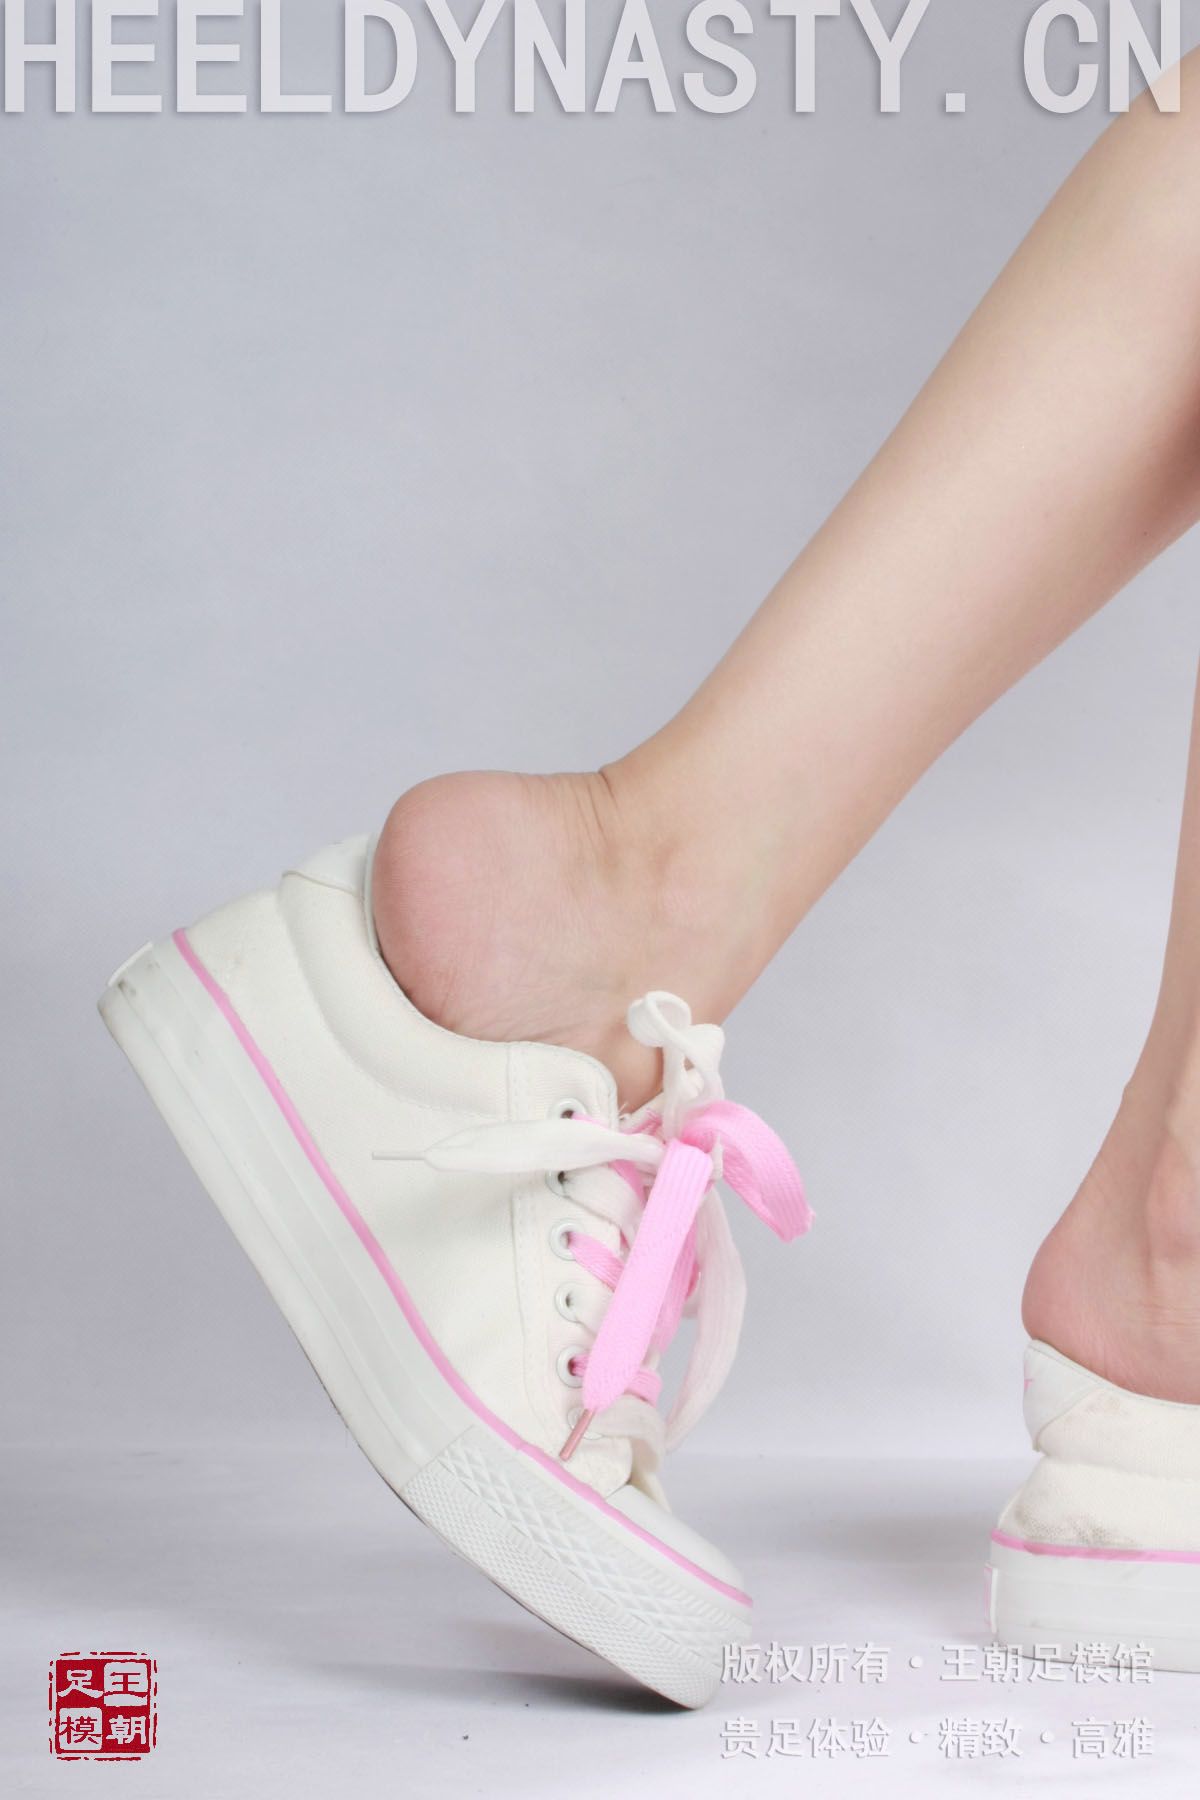 [王朝贵足丝袜] 2009-02-12 室内套图 布丁裸足粉色运动球鞋清晰足跟写真系列0